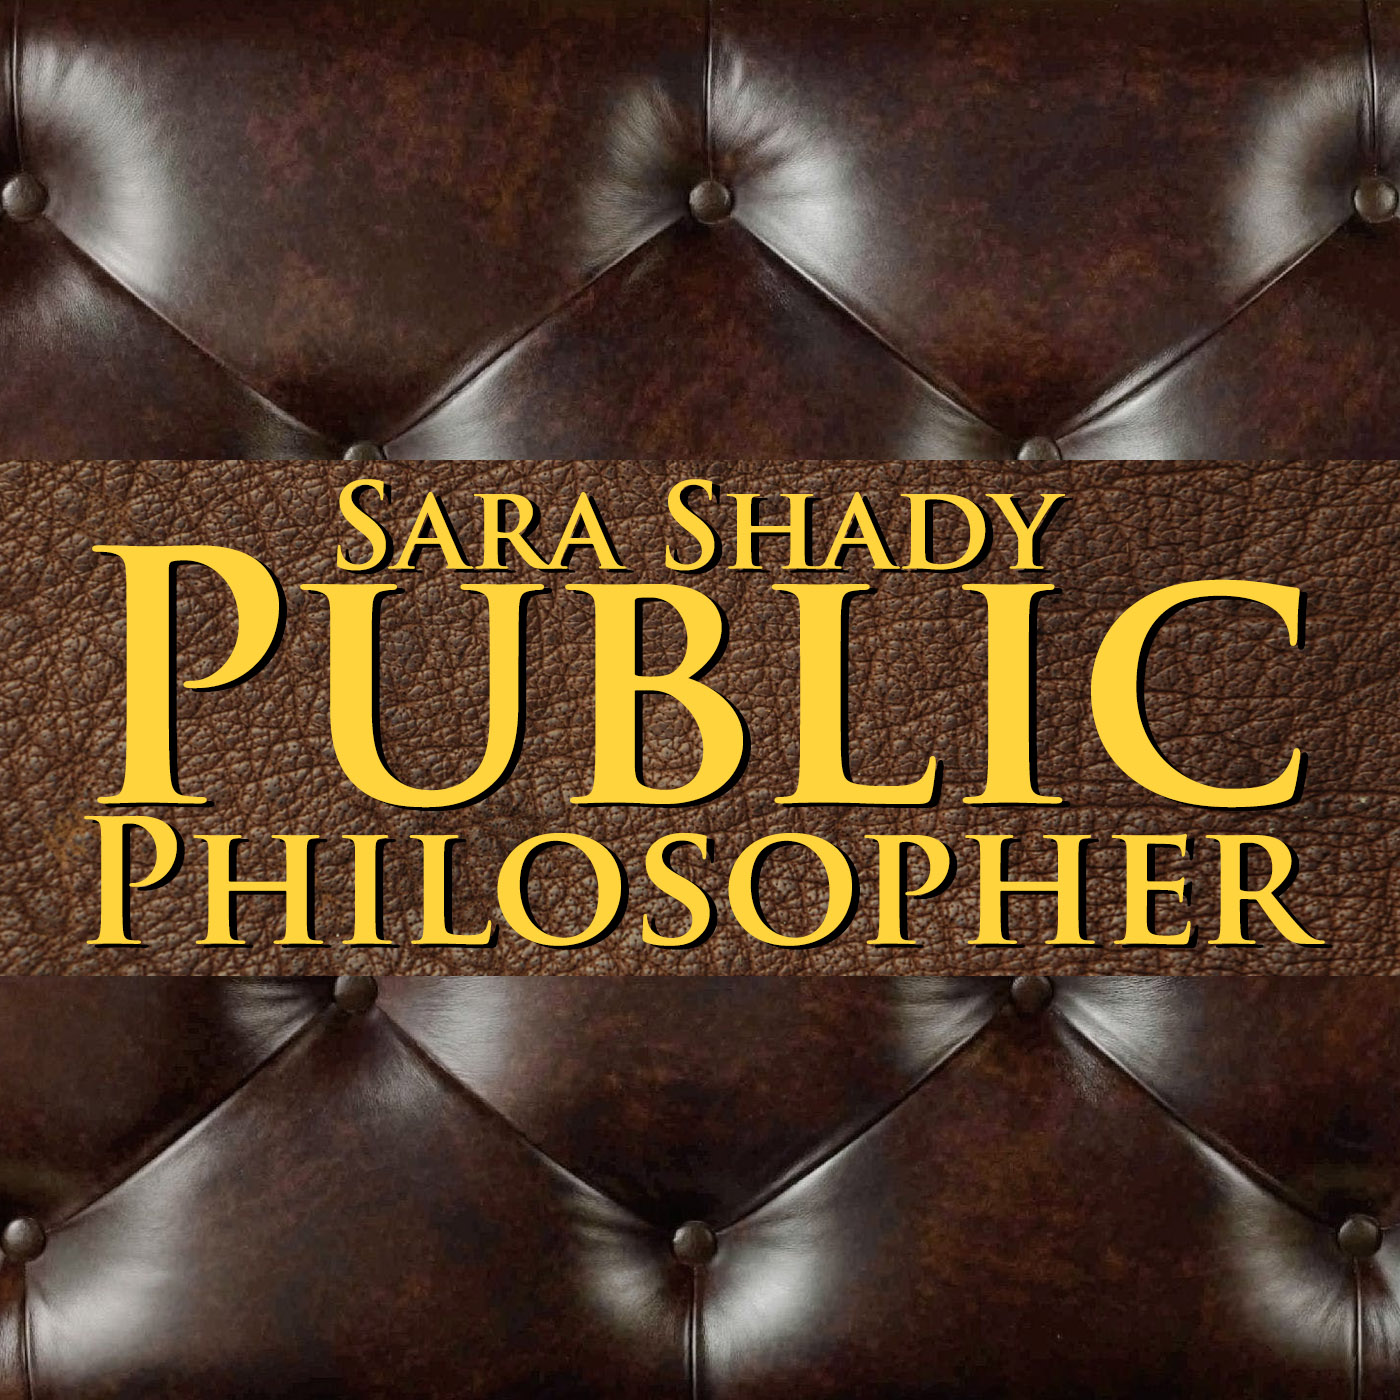 Sara Shady Public Philosopher - Episode 1: Confederate Memorials